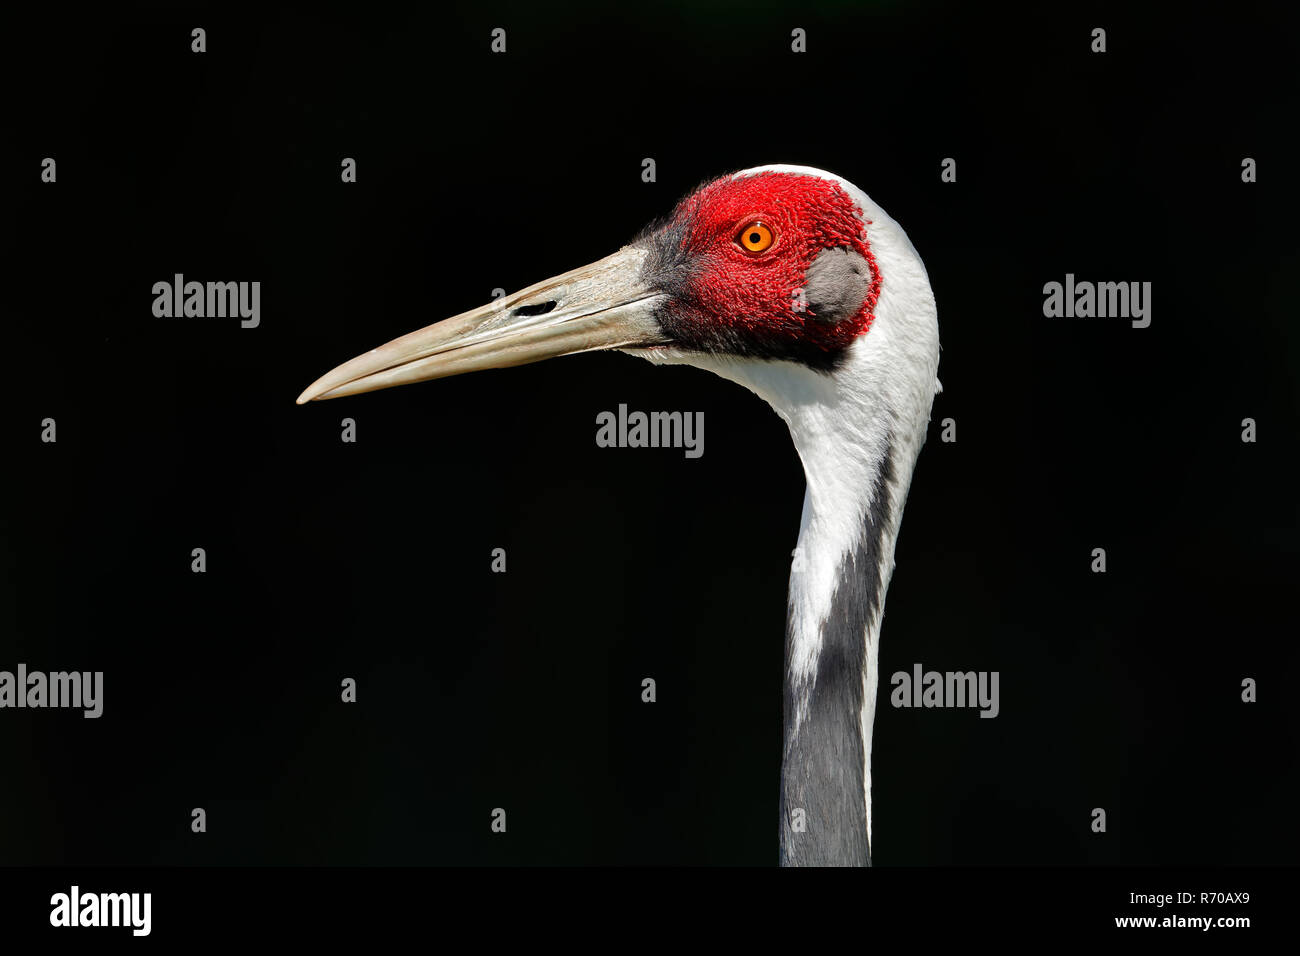 White-naped crane portrait Stock Photo